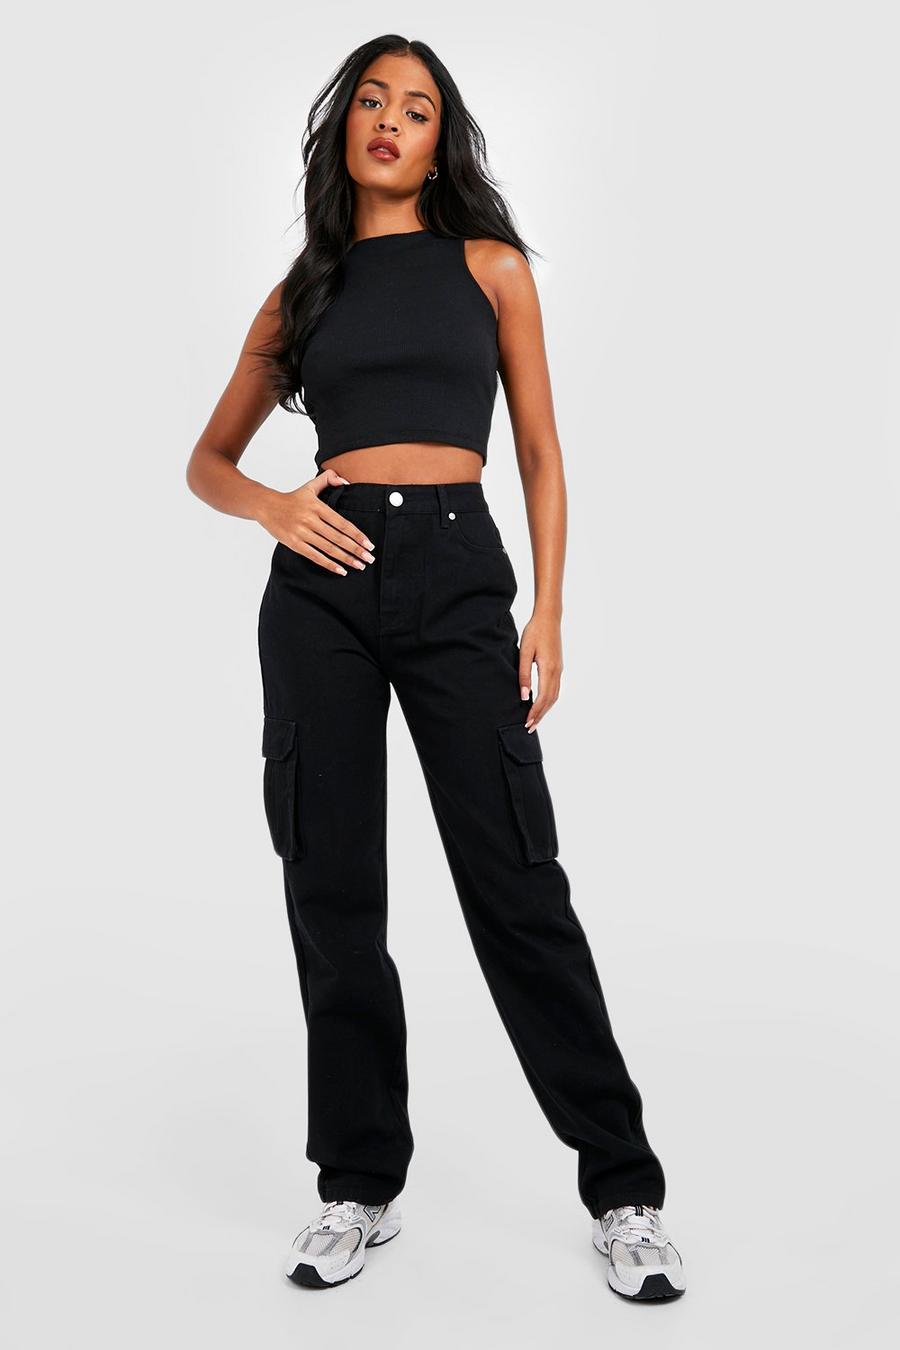 שחור nero ג'ינס דגמ'ח בגזרת רגל ישרה ובגובה מותן בינוני, לנשים גבוהות